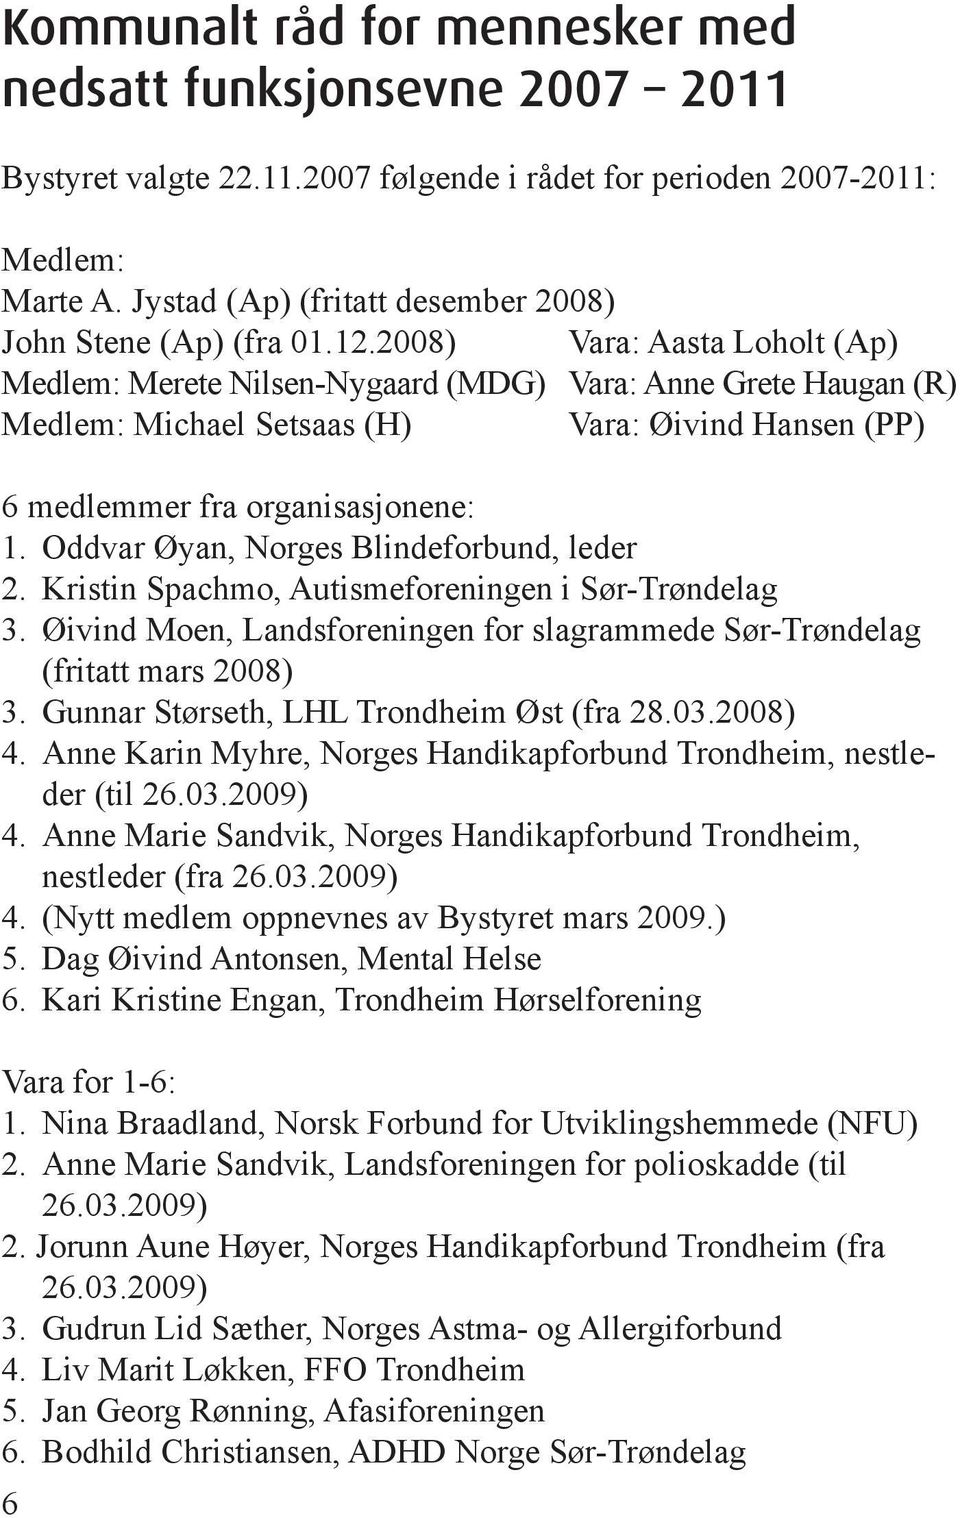 2008) Vara: Aasta Loholt (Ap) Medlem: Merete Nilsen-Nygaard (MDG) Vara: Anne Grete Haugan (R) Medlem: Michael Setsaas (H) Vara: Øivind Hansen (PP) 6 medlemmer fra organisasjonene: 1.